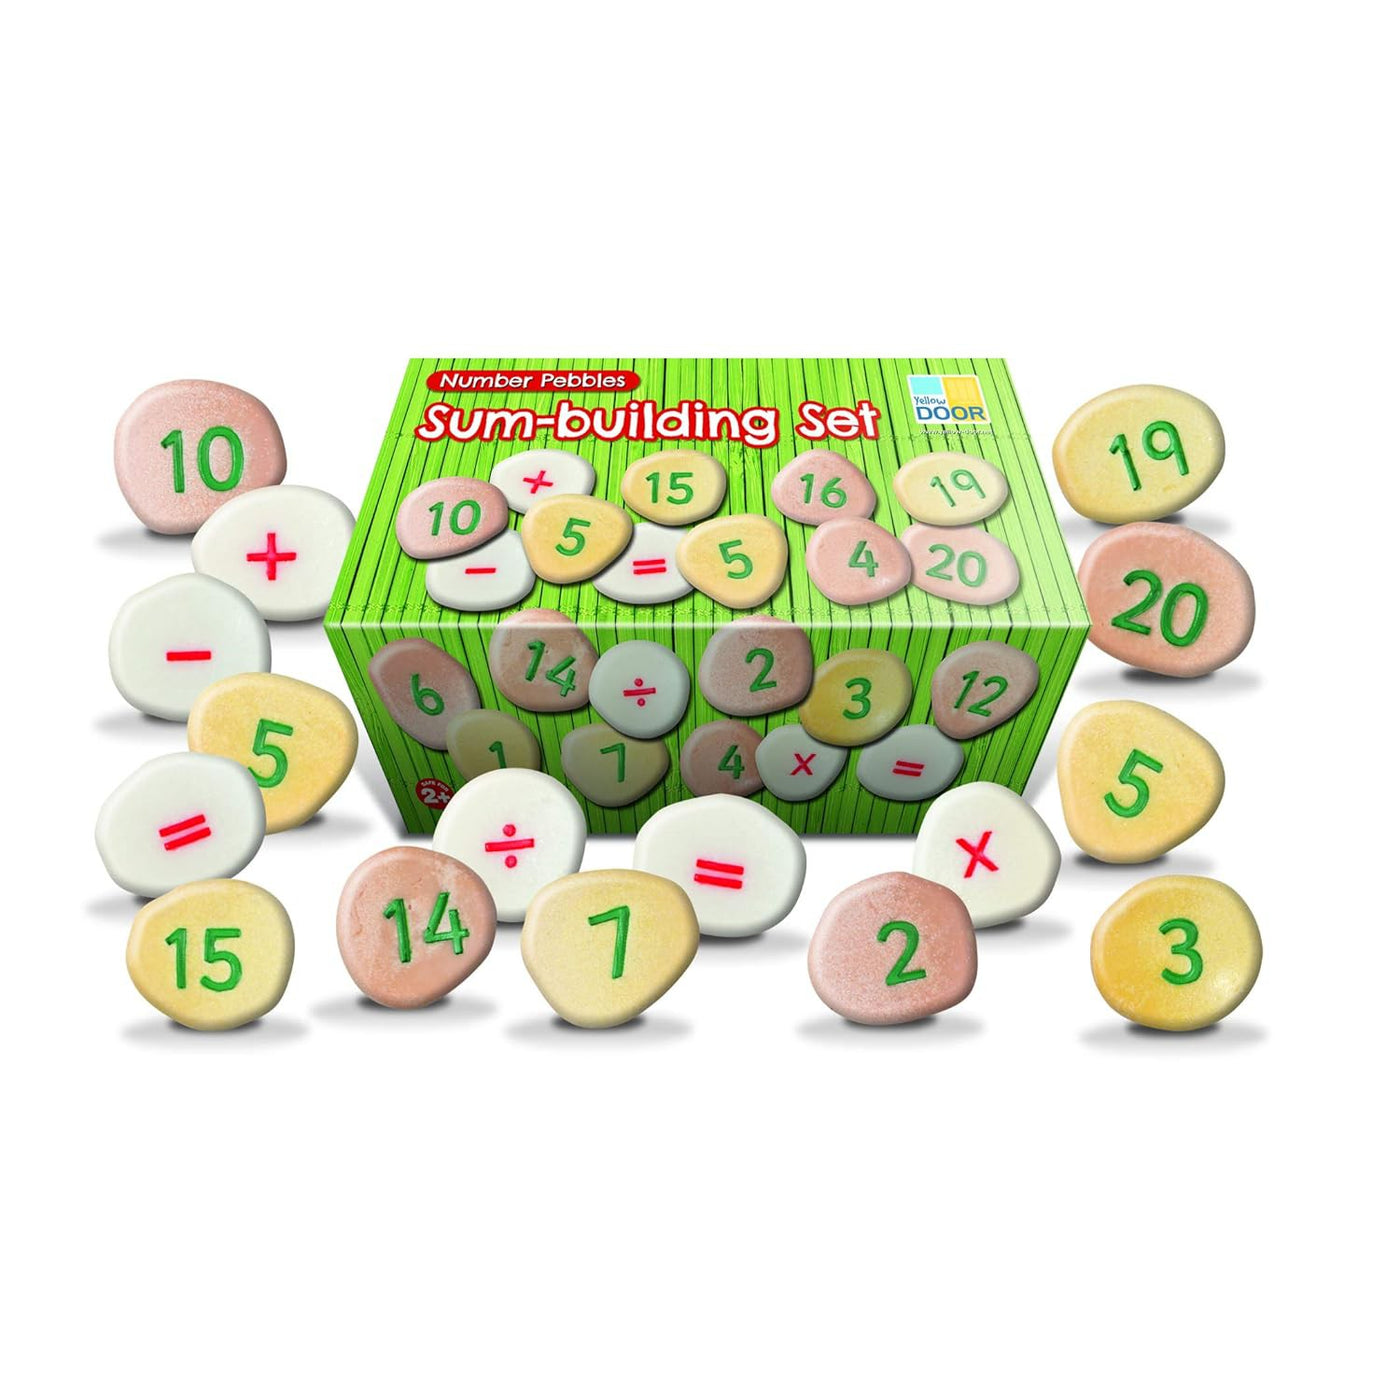 Sum-Building Number Pebbles Set